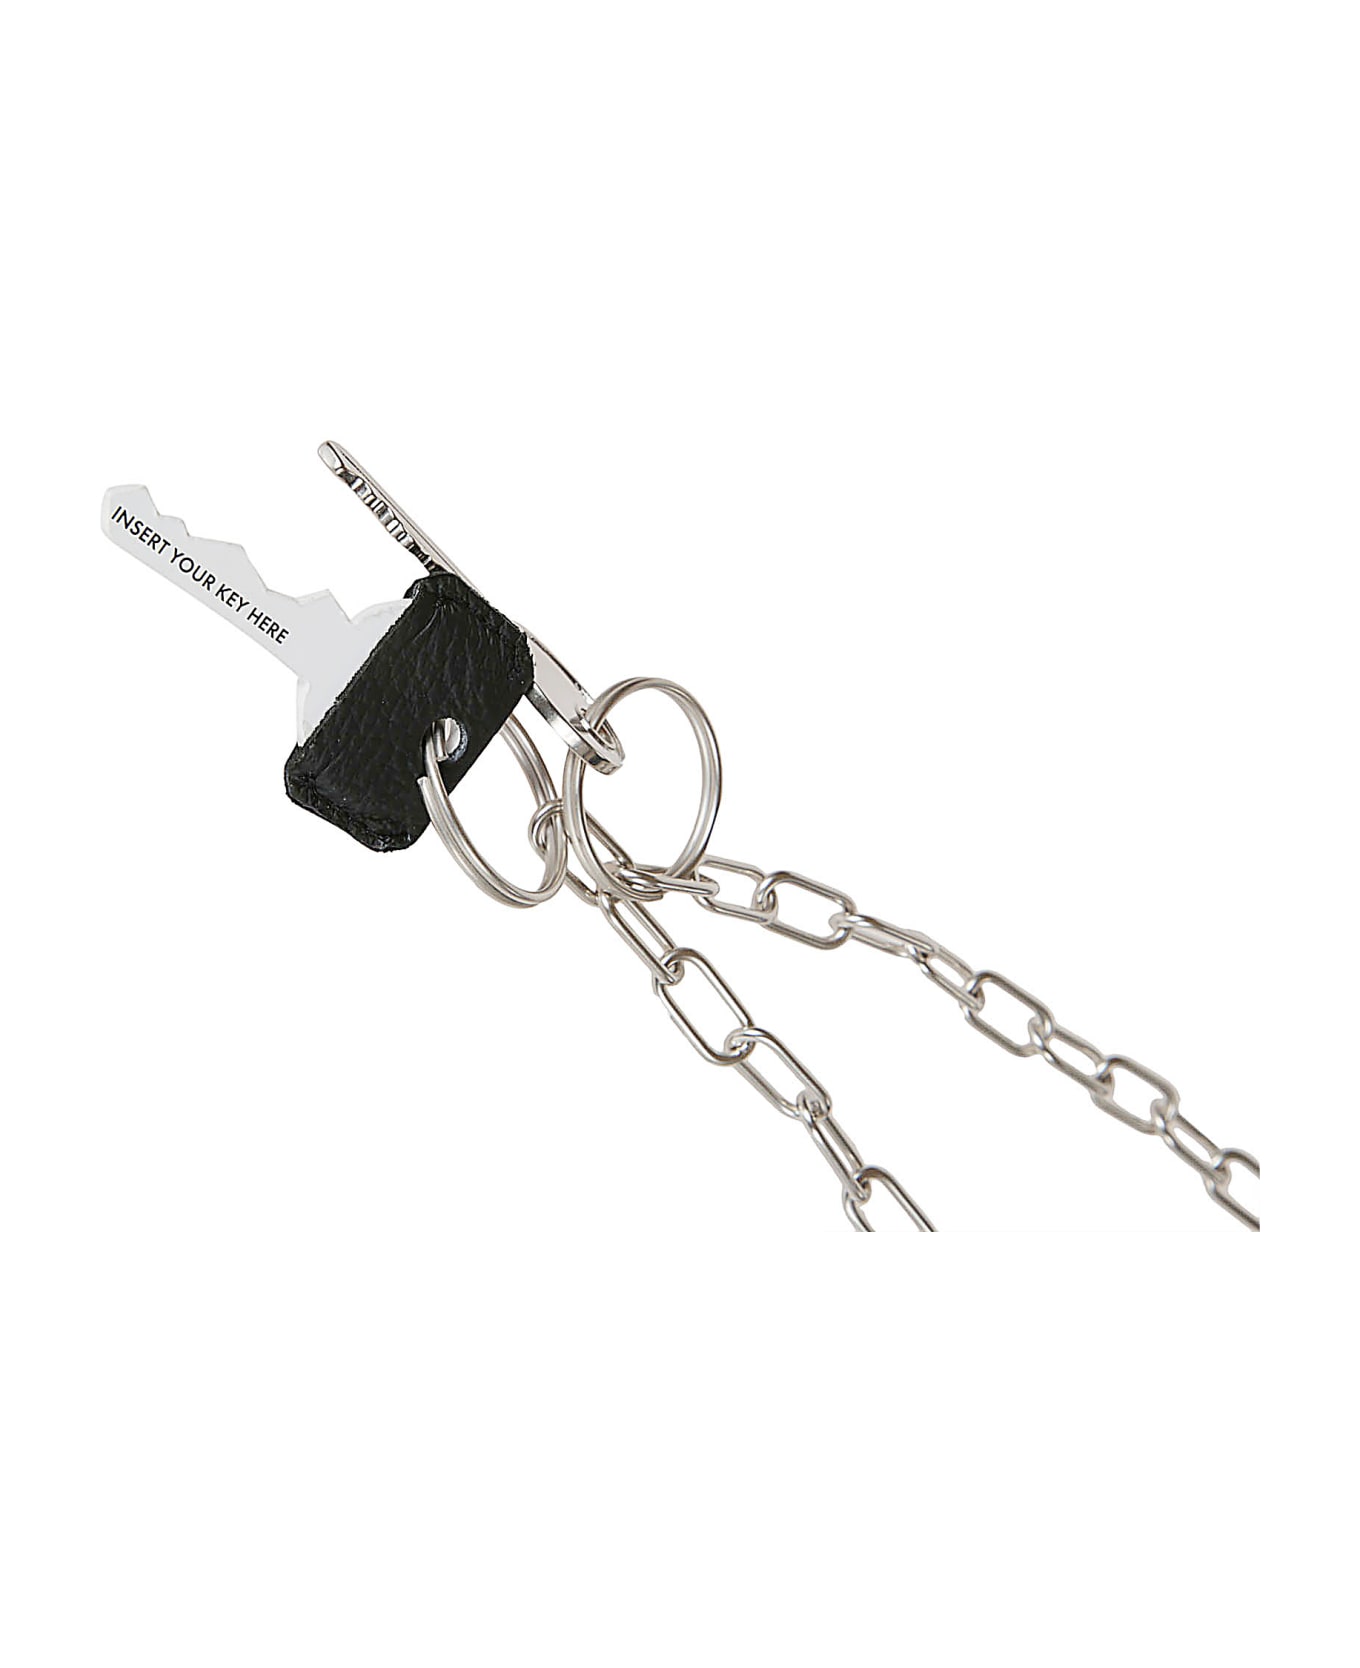 MM6 Maison Margiela Chain Key Holder - Grey/Silver キーリング